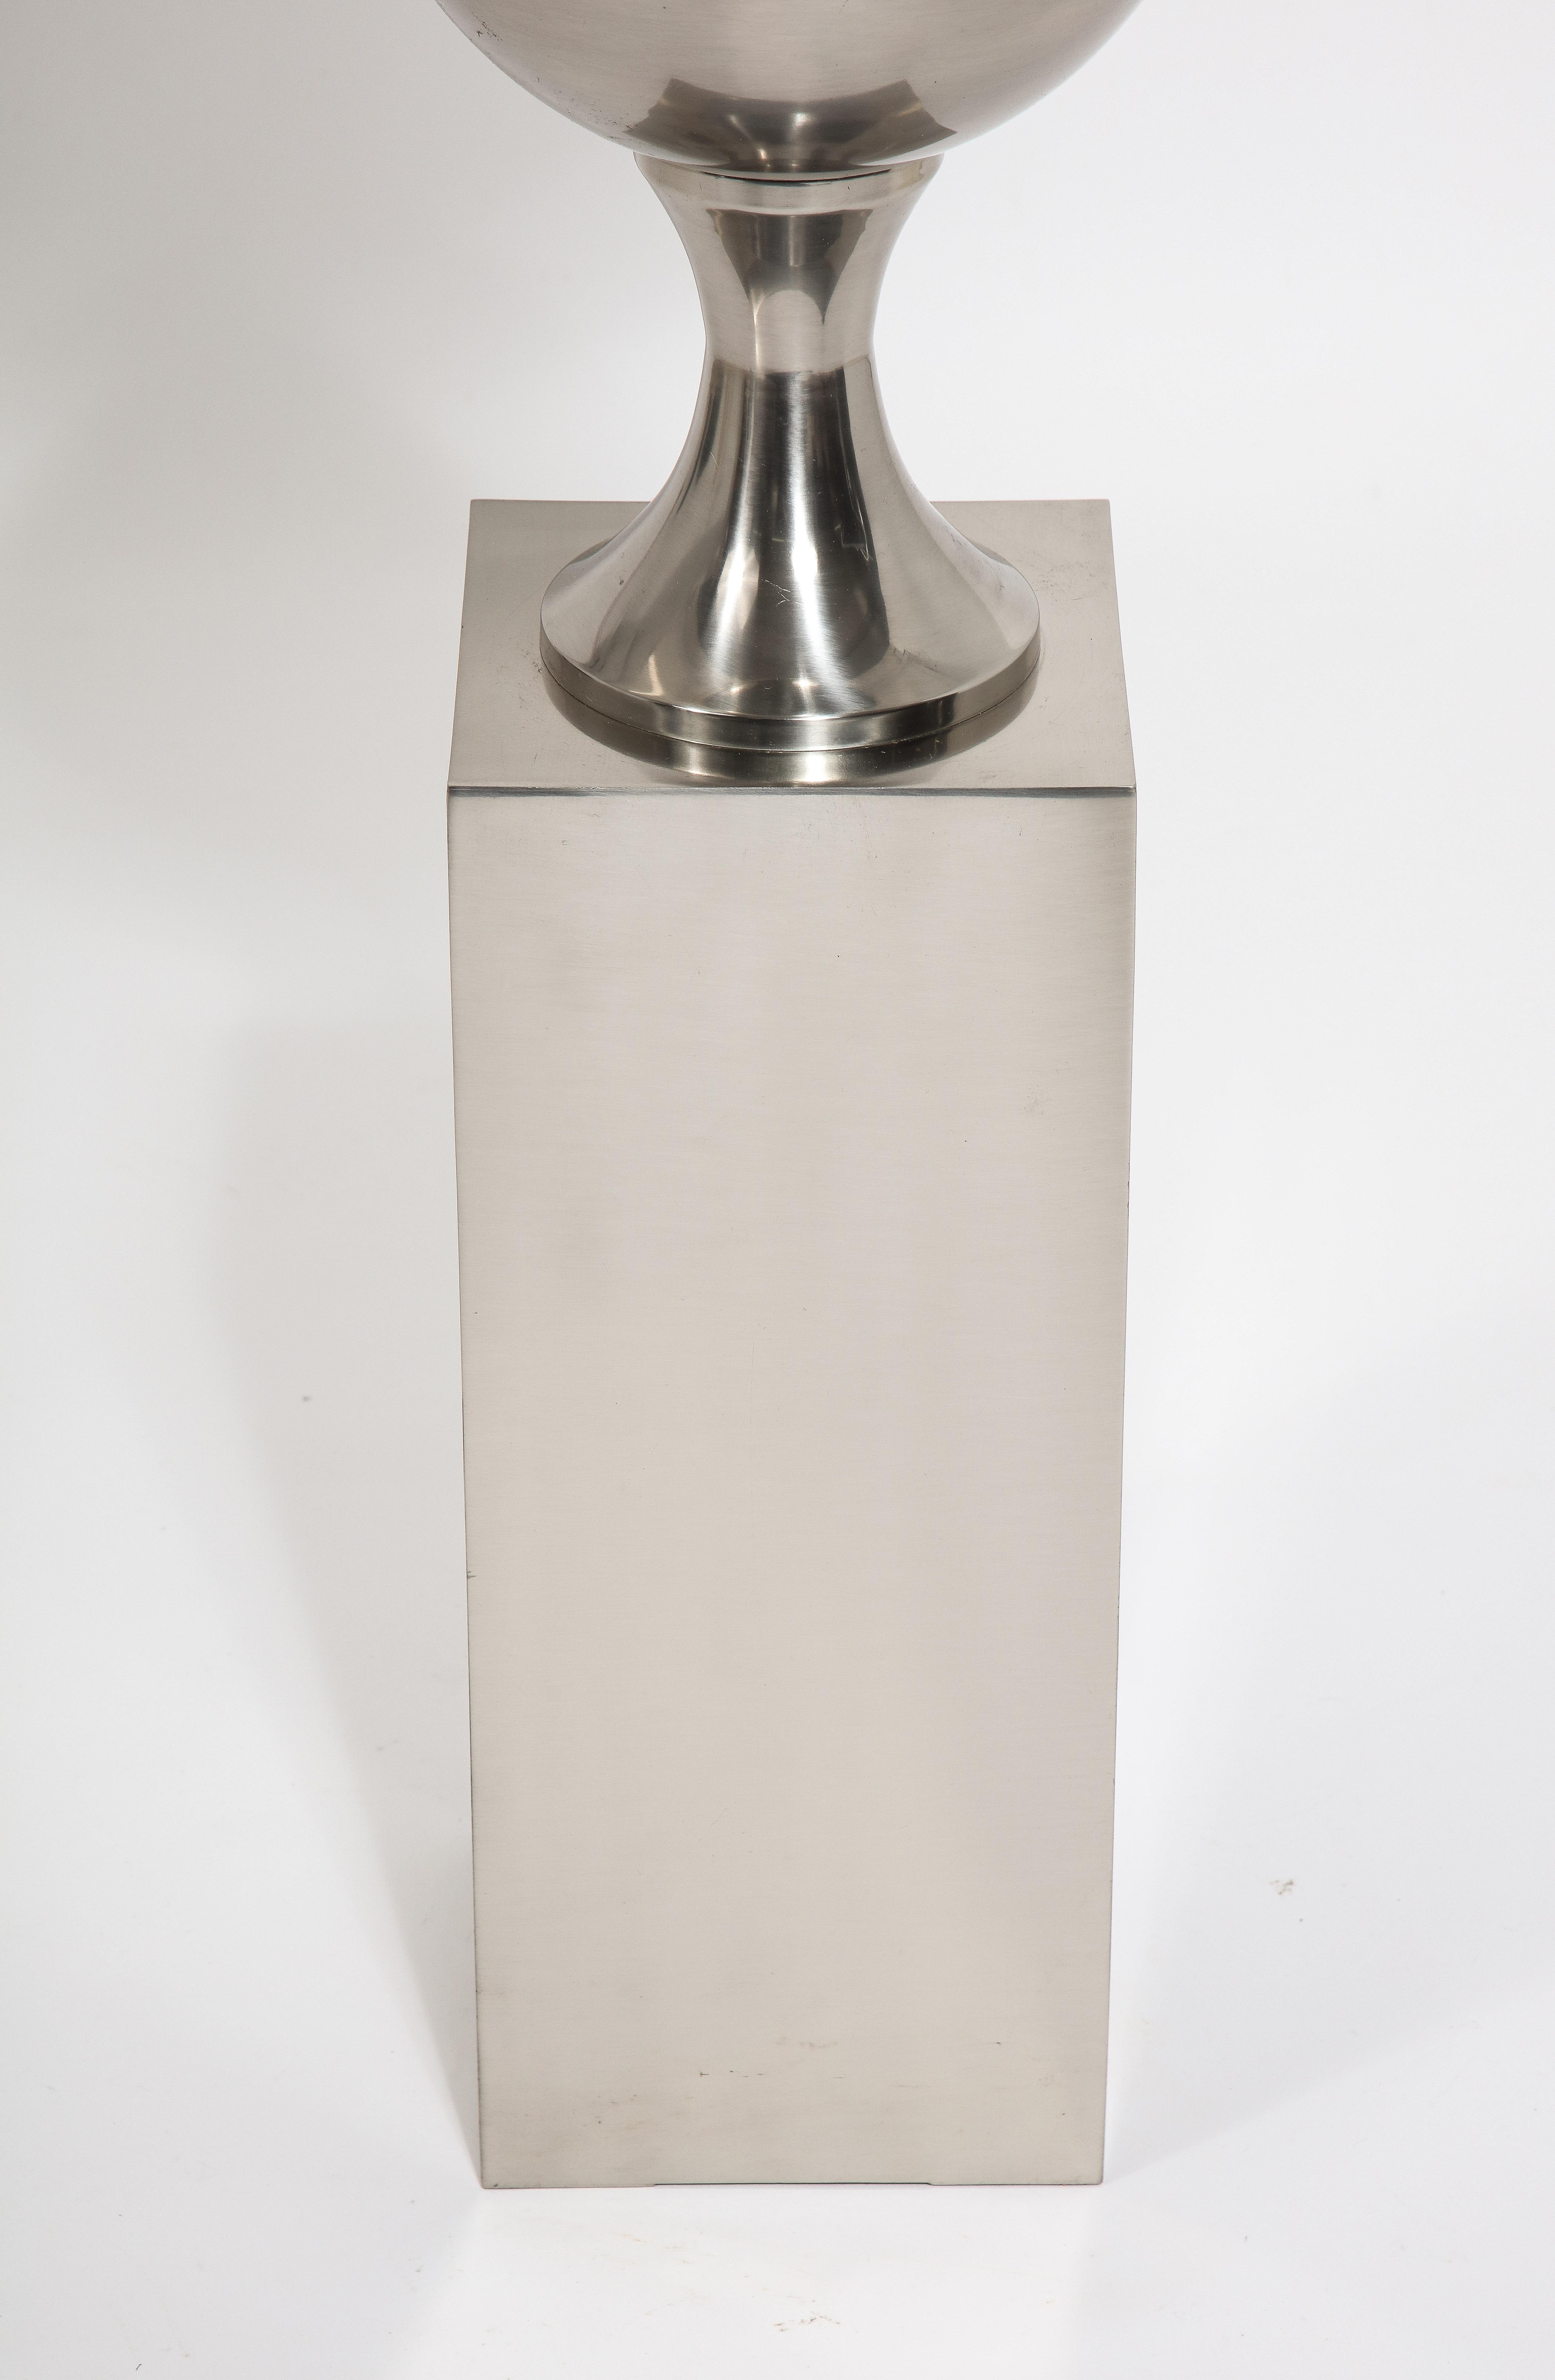 Rare et grand lampadaire de Barbier en laiton nickelé brossé. Ce modèle est utilisé comme lampe de table et rarement comme lampe sur pied. L'abat-jour n'est pas inclus, il est représenté à des fins photographiques.